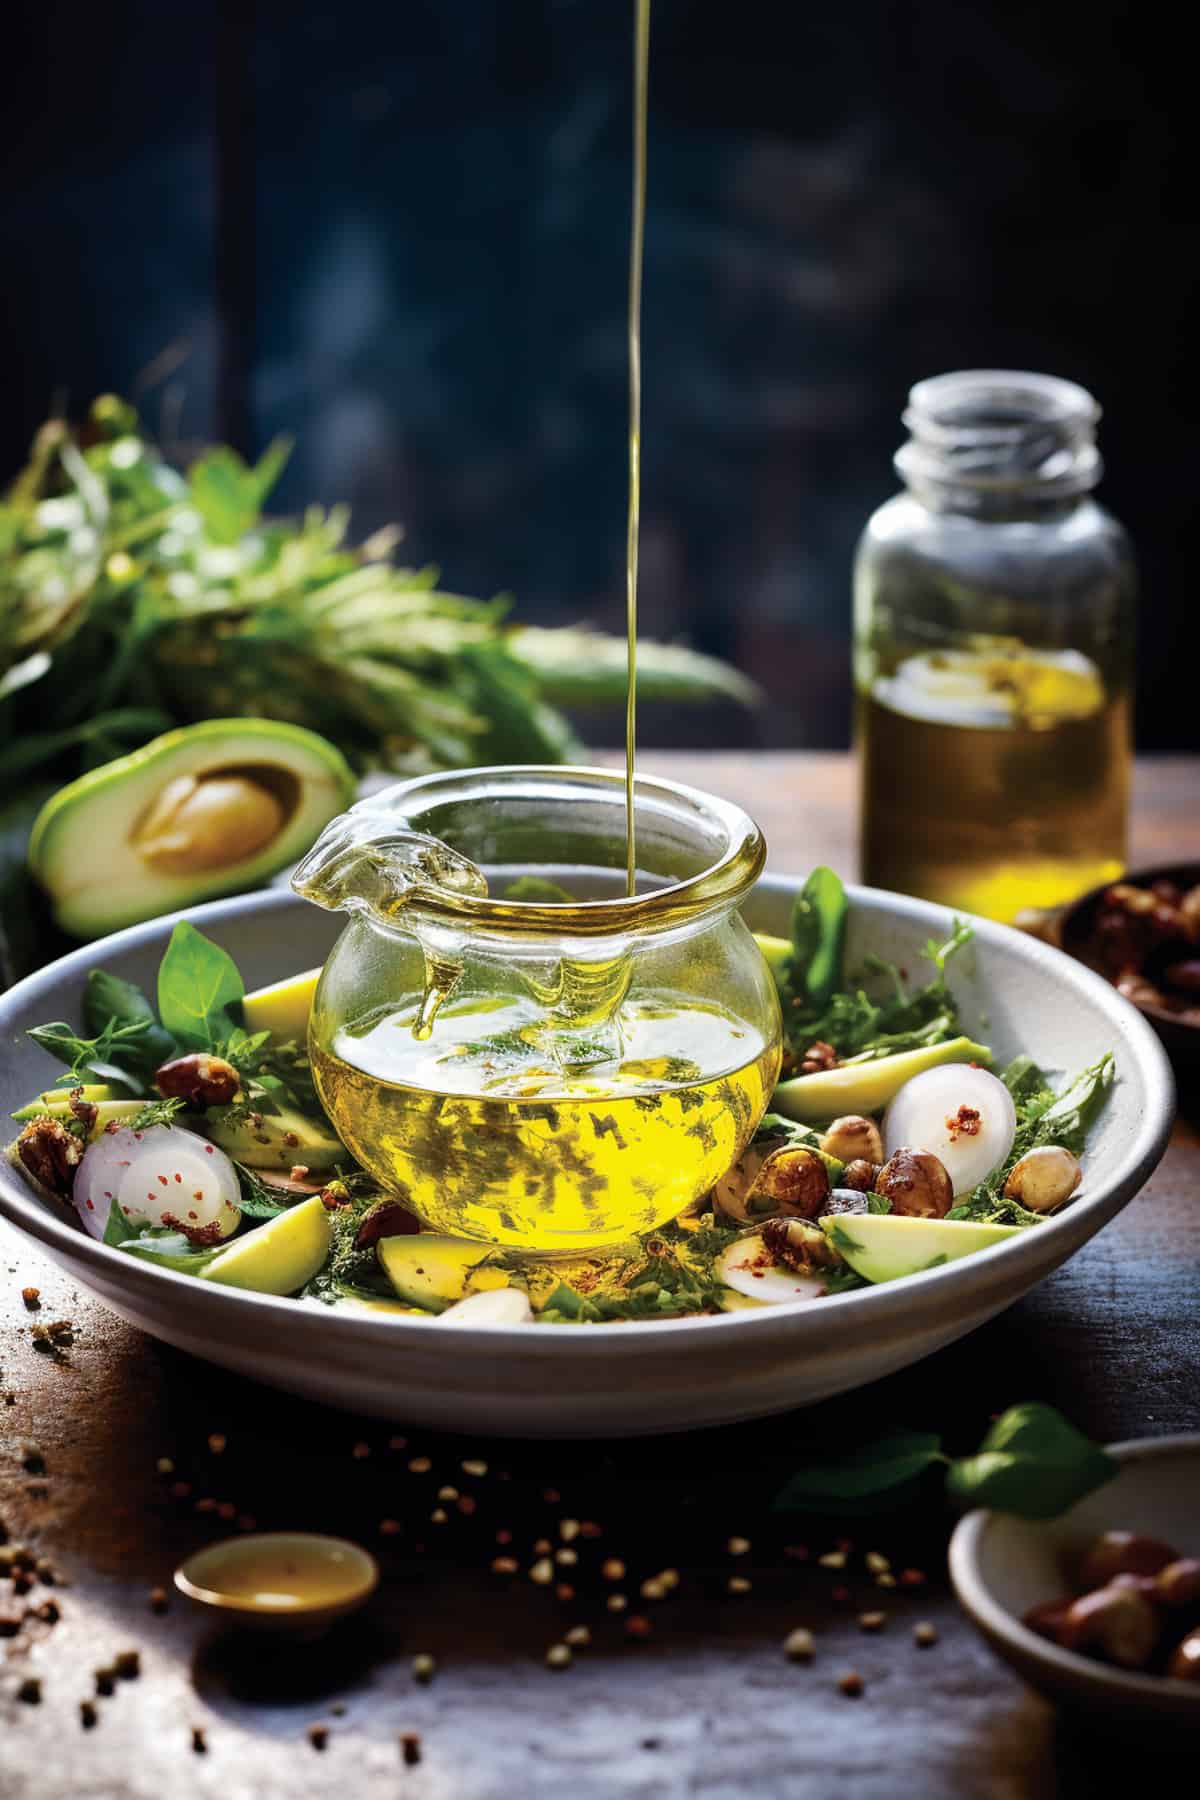 Homemade olive oil vinaigrette on a jar.